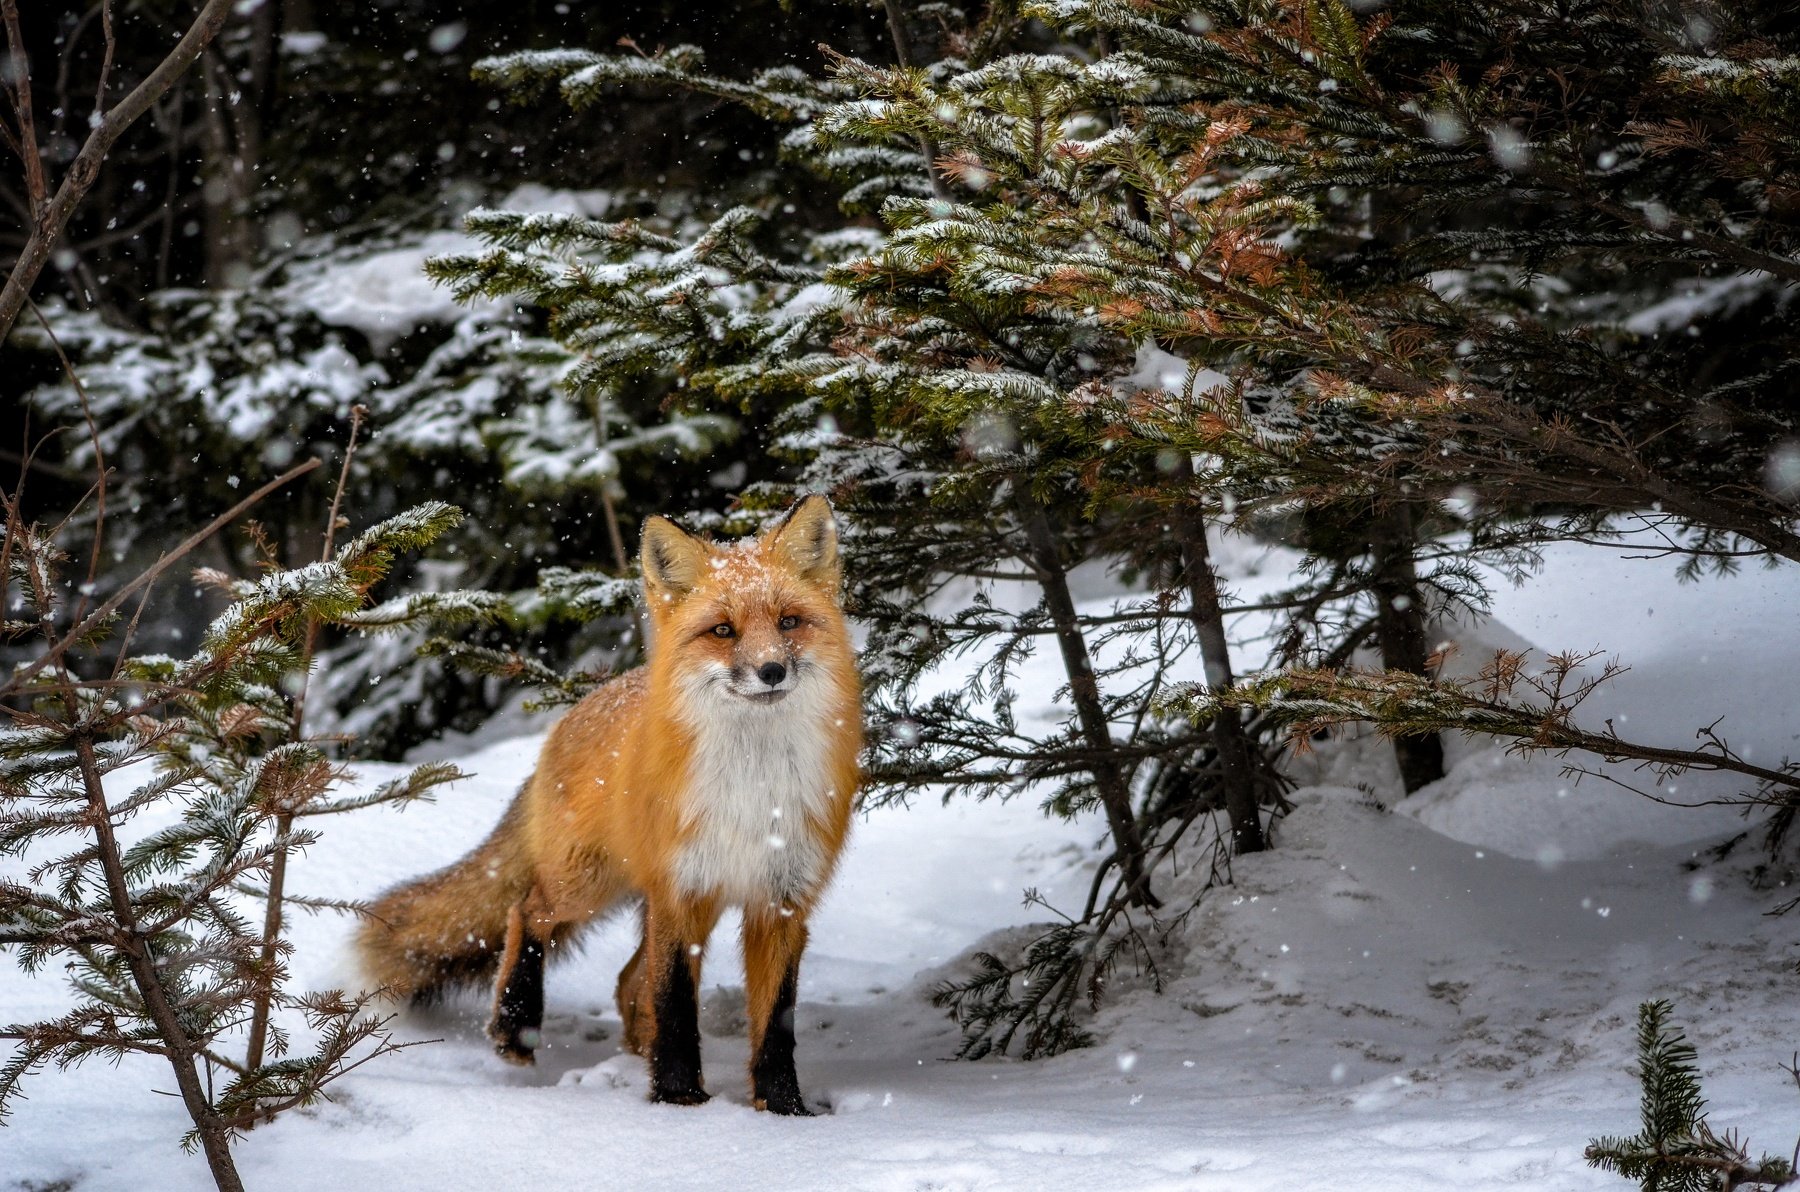 лиса, лисы, животные, снег, зима, animals, fox, foxes, animal, лис, red fox, forest, лес, Вероника Романенко